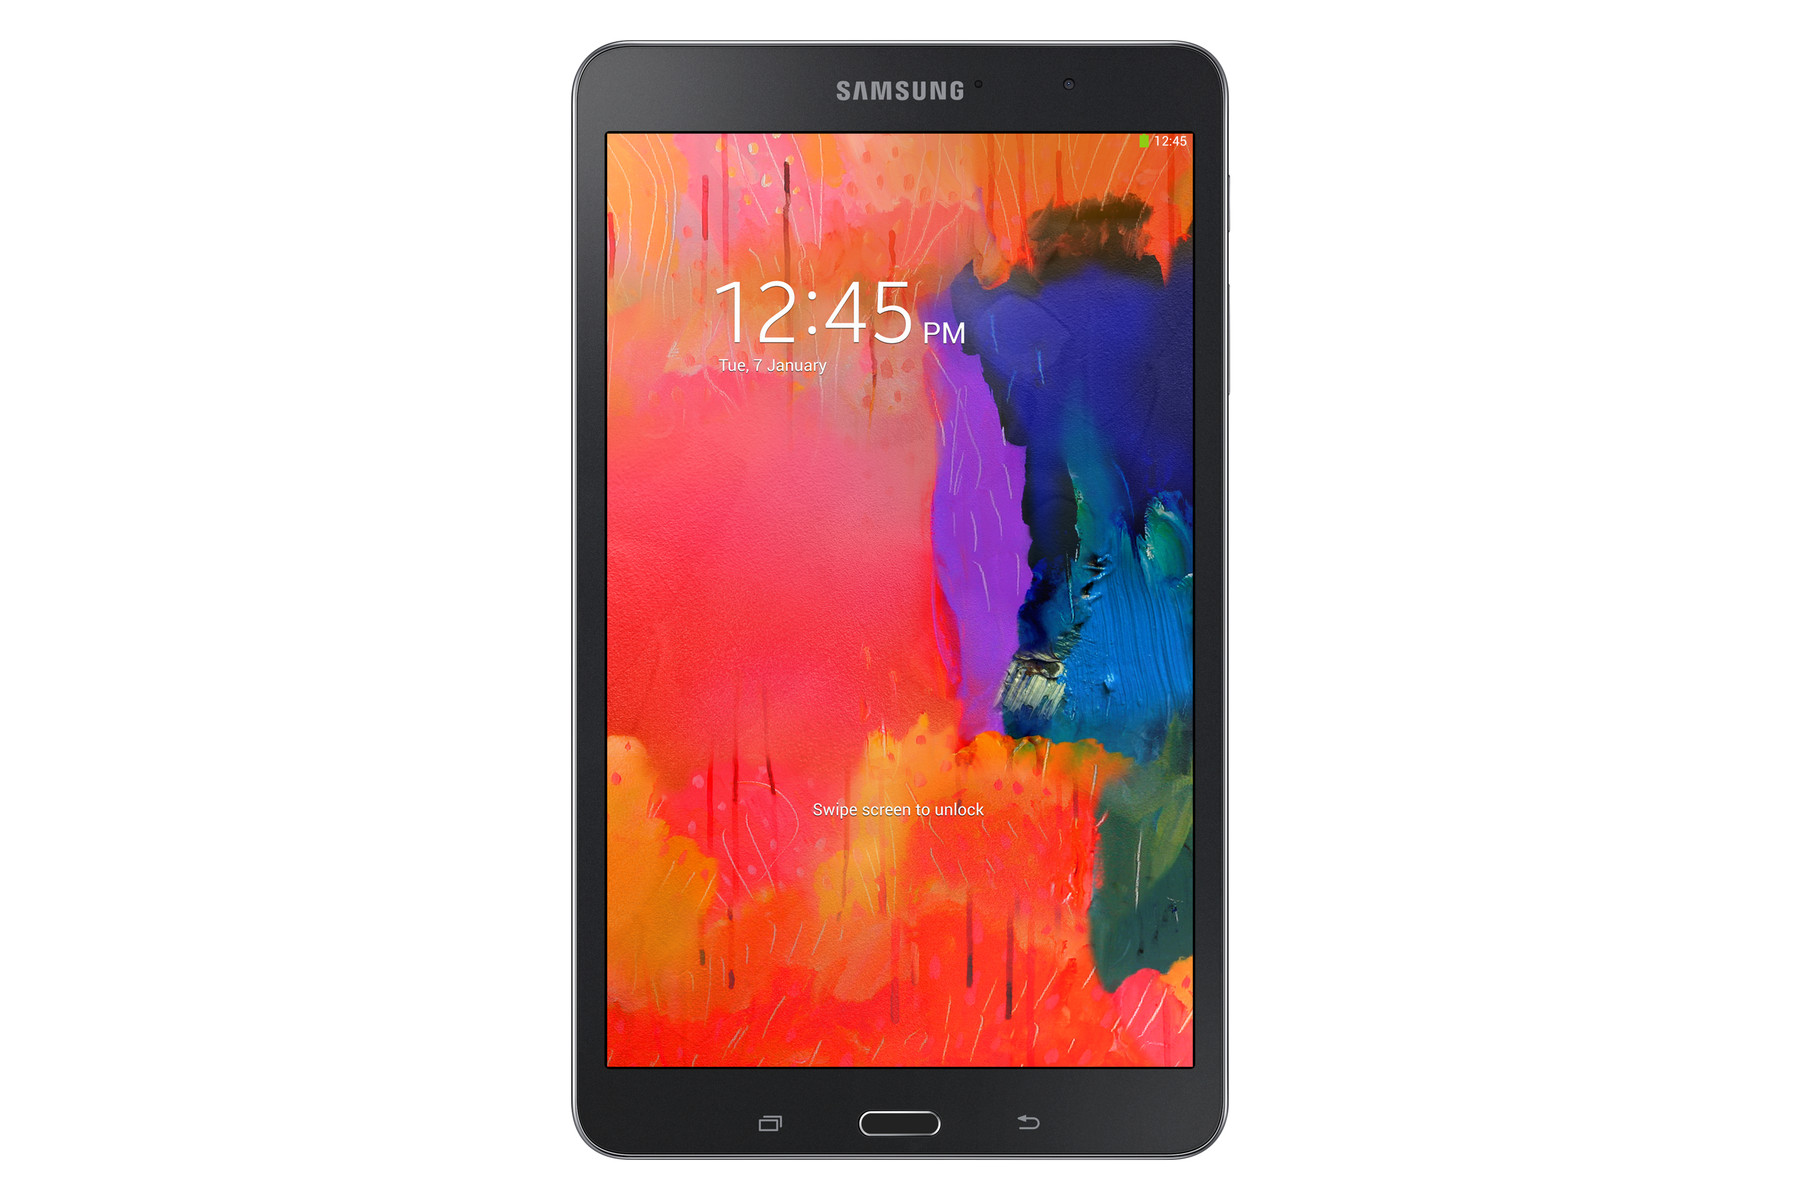 Samsung Galaxy TabPRO 8.4 nổi bật trong top máy tính bảng giá rẻ